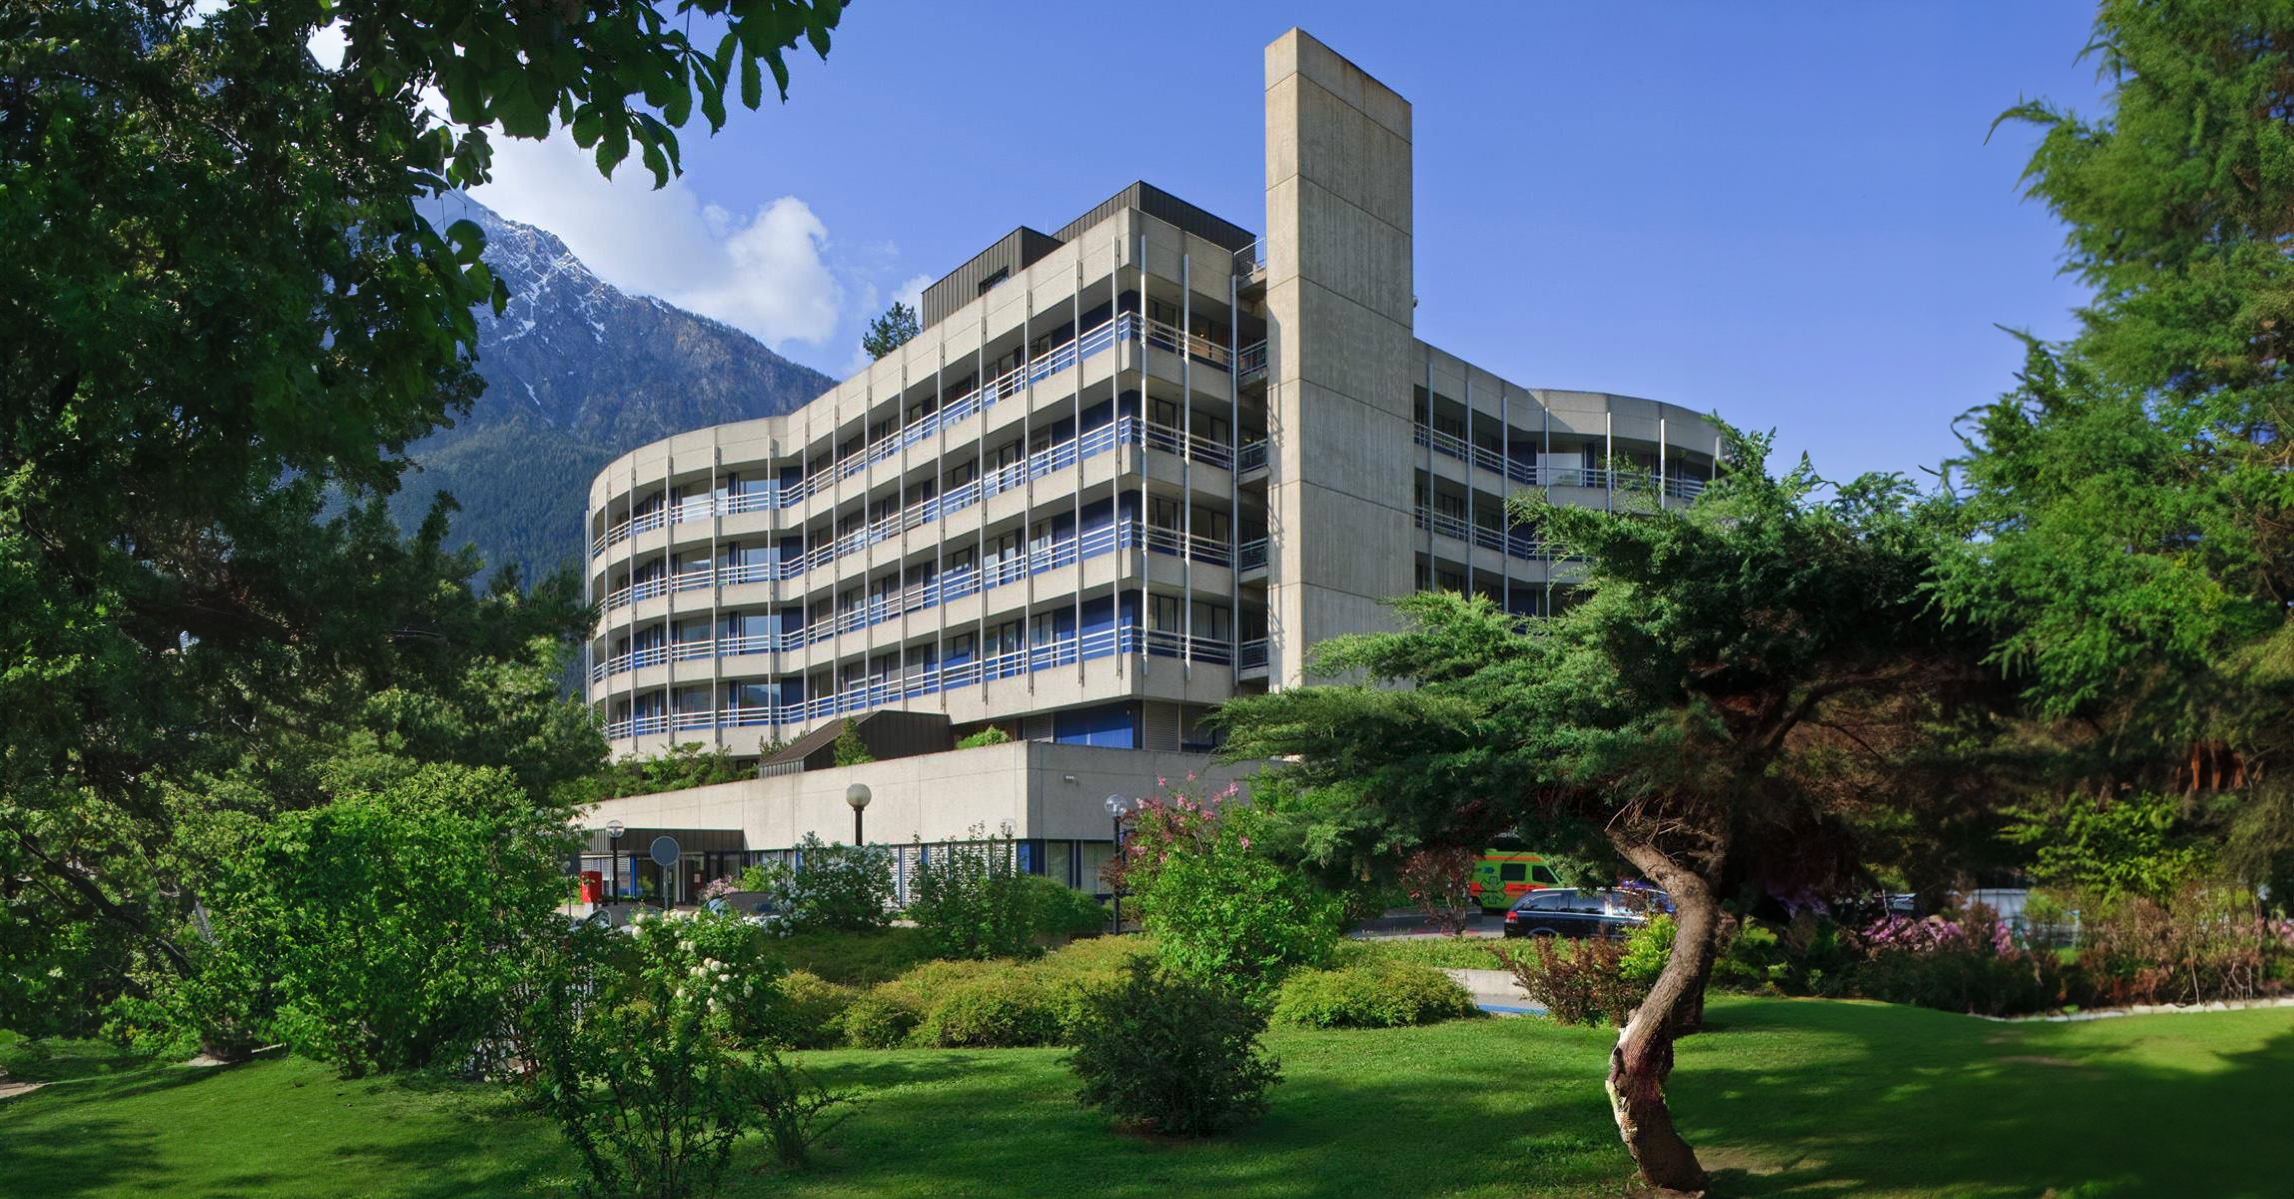 Illustracja do wpisu: Spitalzentrum Oberwallis. Wizyta w sercu szwajcarskich Alp.